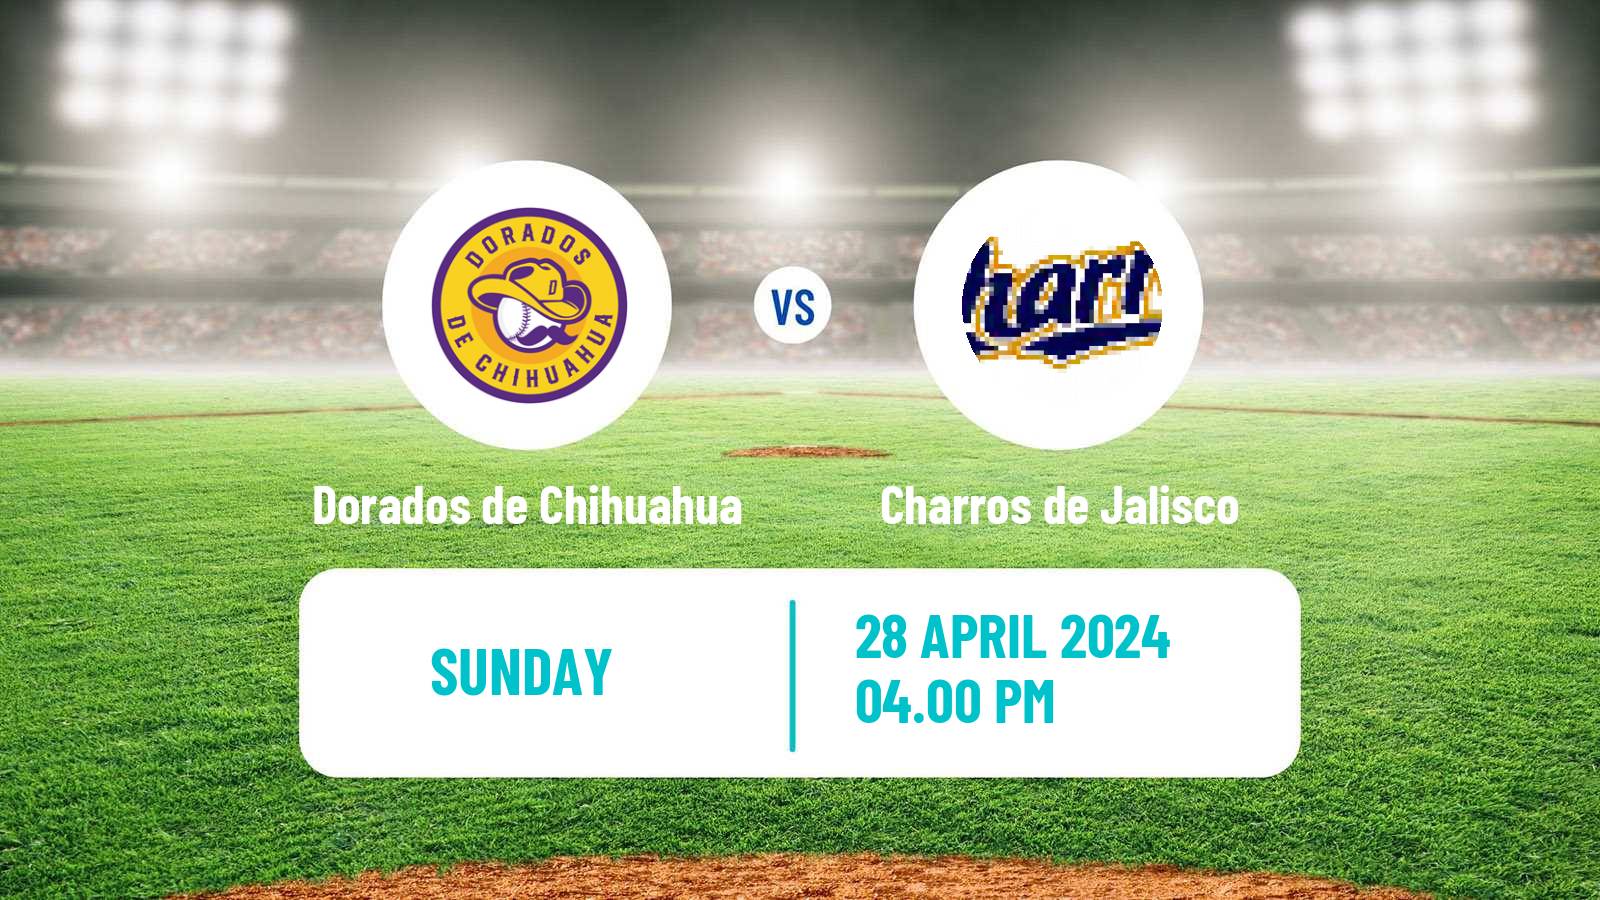 Baseball LMB Dorados de Chihuahua - Charros de Jalisco